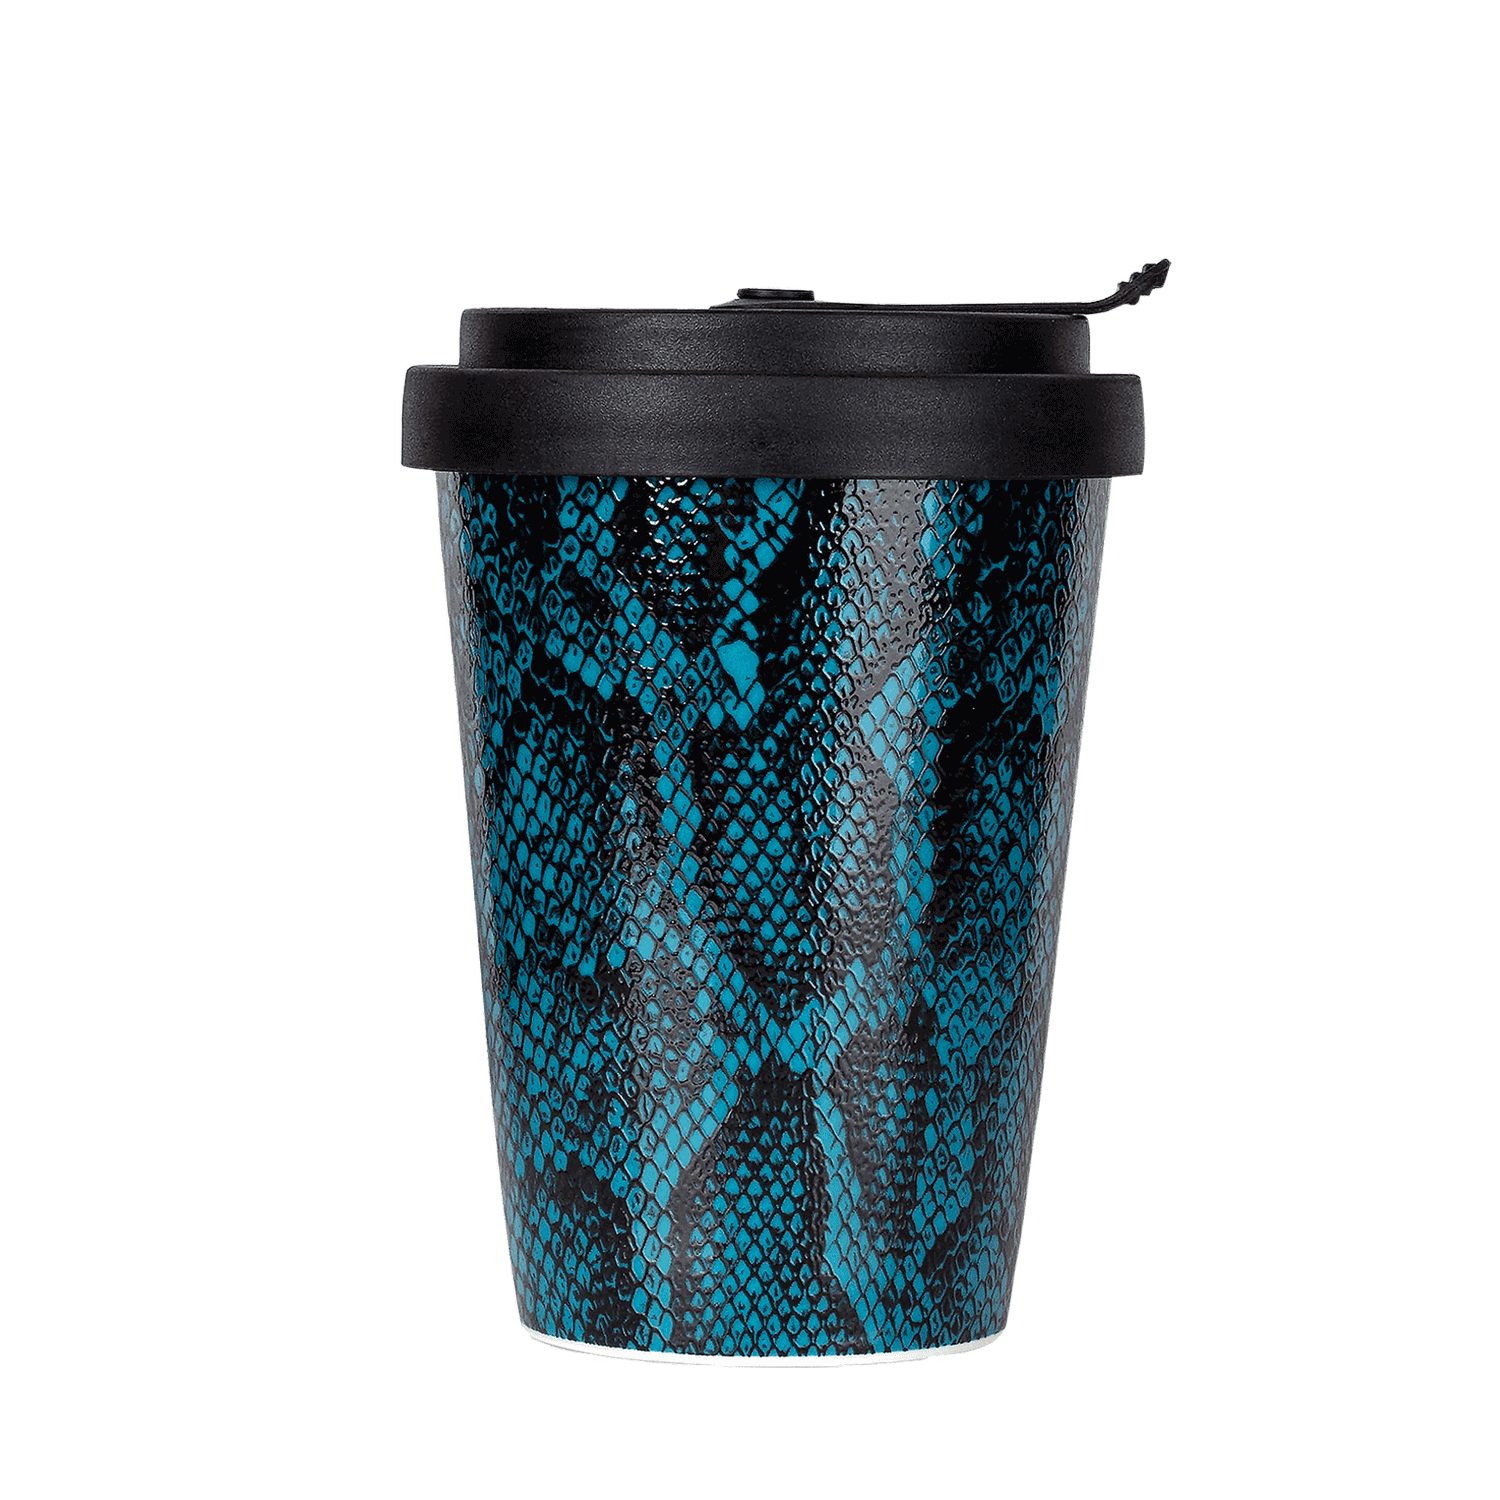 Mahlwerck Manufaktur Porzellan, Snake Coffee-to-go-Becher spülmaschinengeeignet, auslaufsicher, Blue animalprint, 100% Deckel, klimaneutral Snacke + Becher